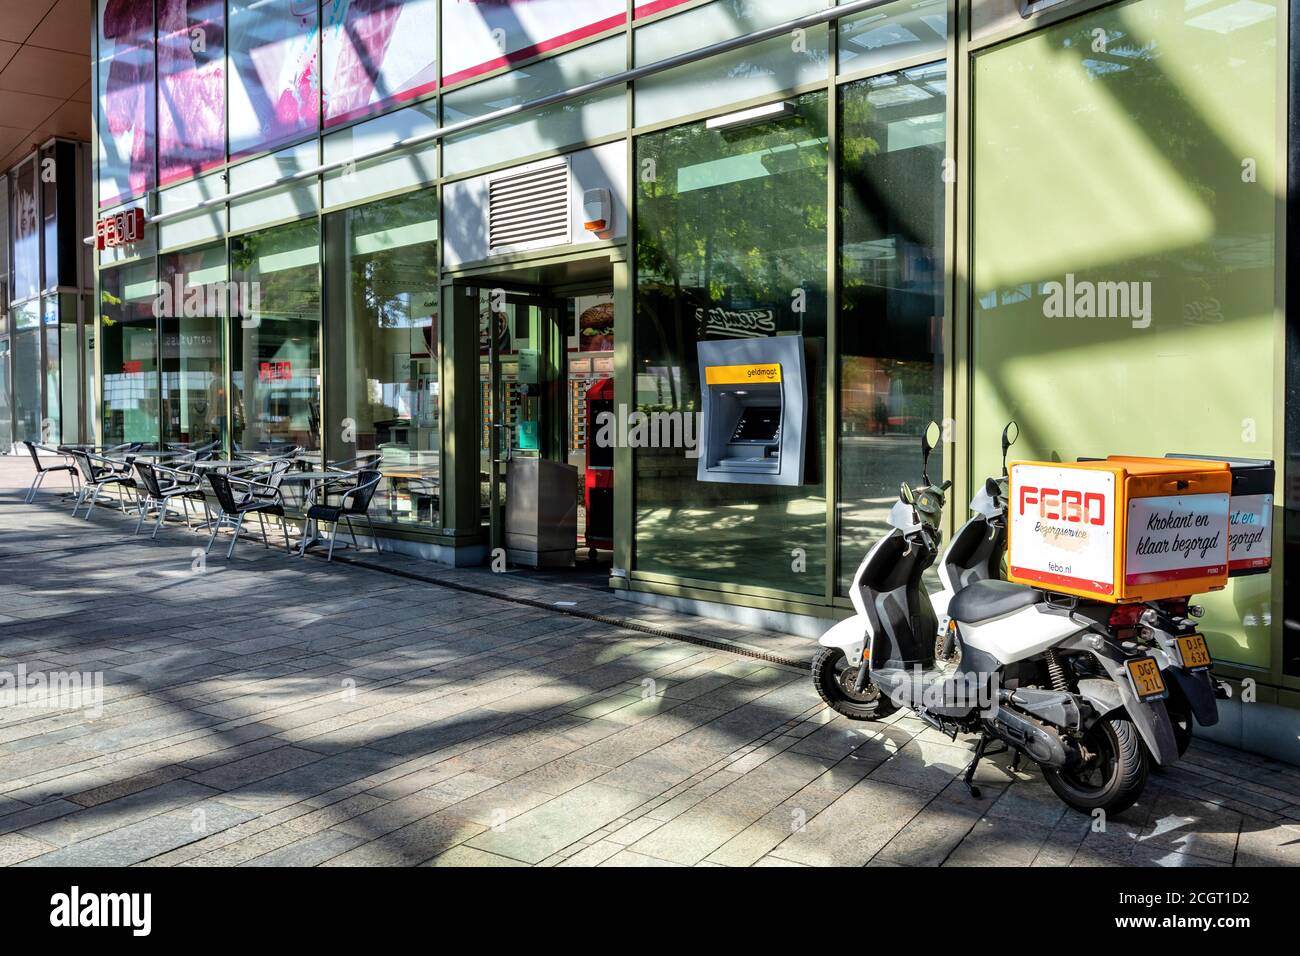 Filiale DI FEBO ad Almere, Paesi Bassi. FEBO è una catena di ristoranti fast food olandesi walk-up del tipo automa. Foto Stock